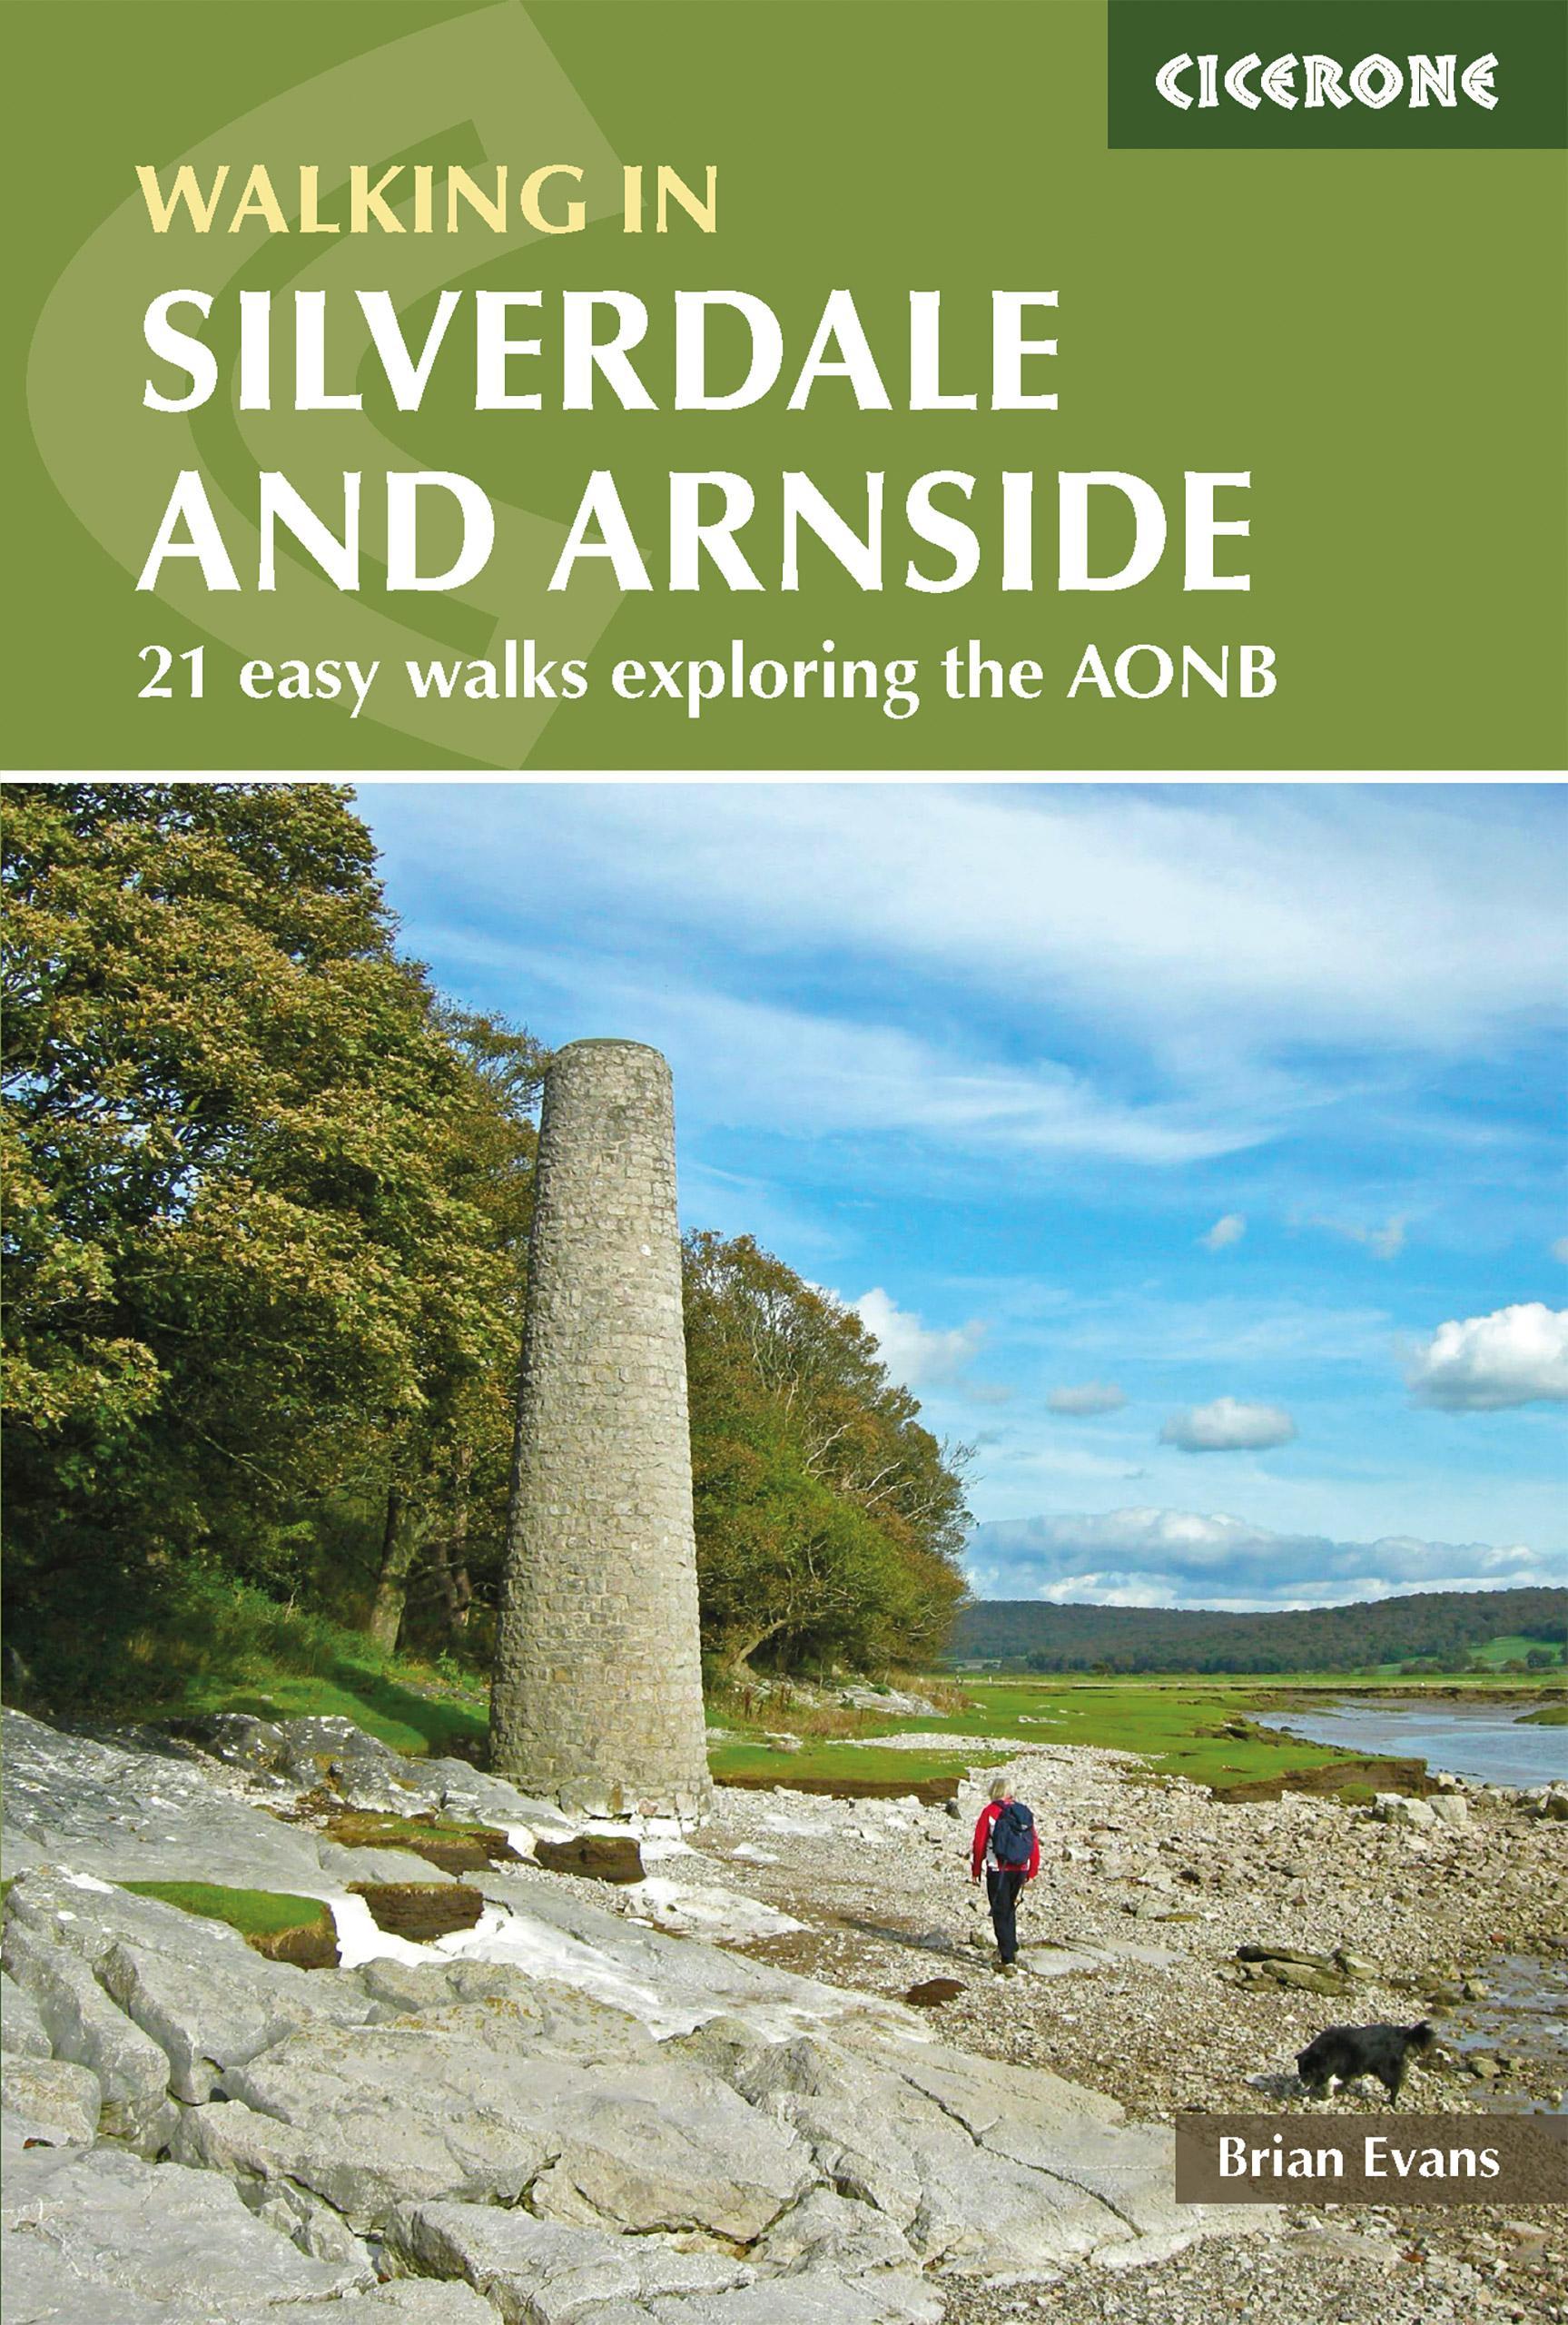 Walks in Silverdale and Arnside - Brian Evans